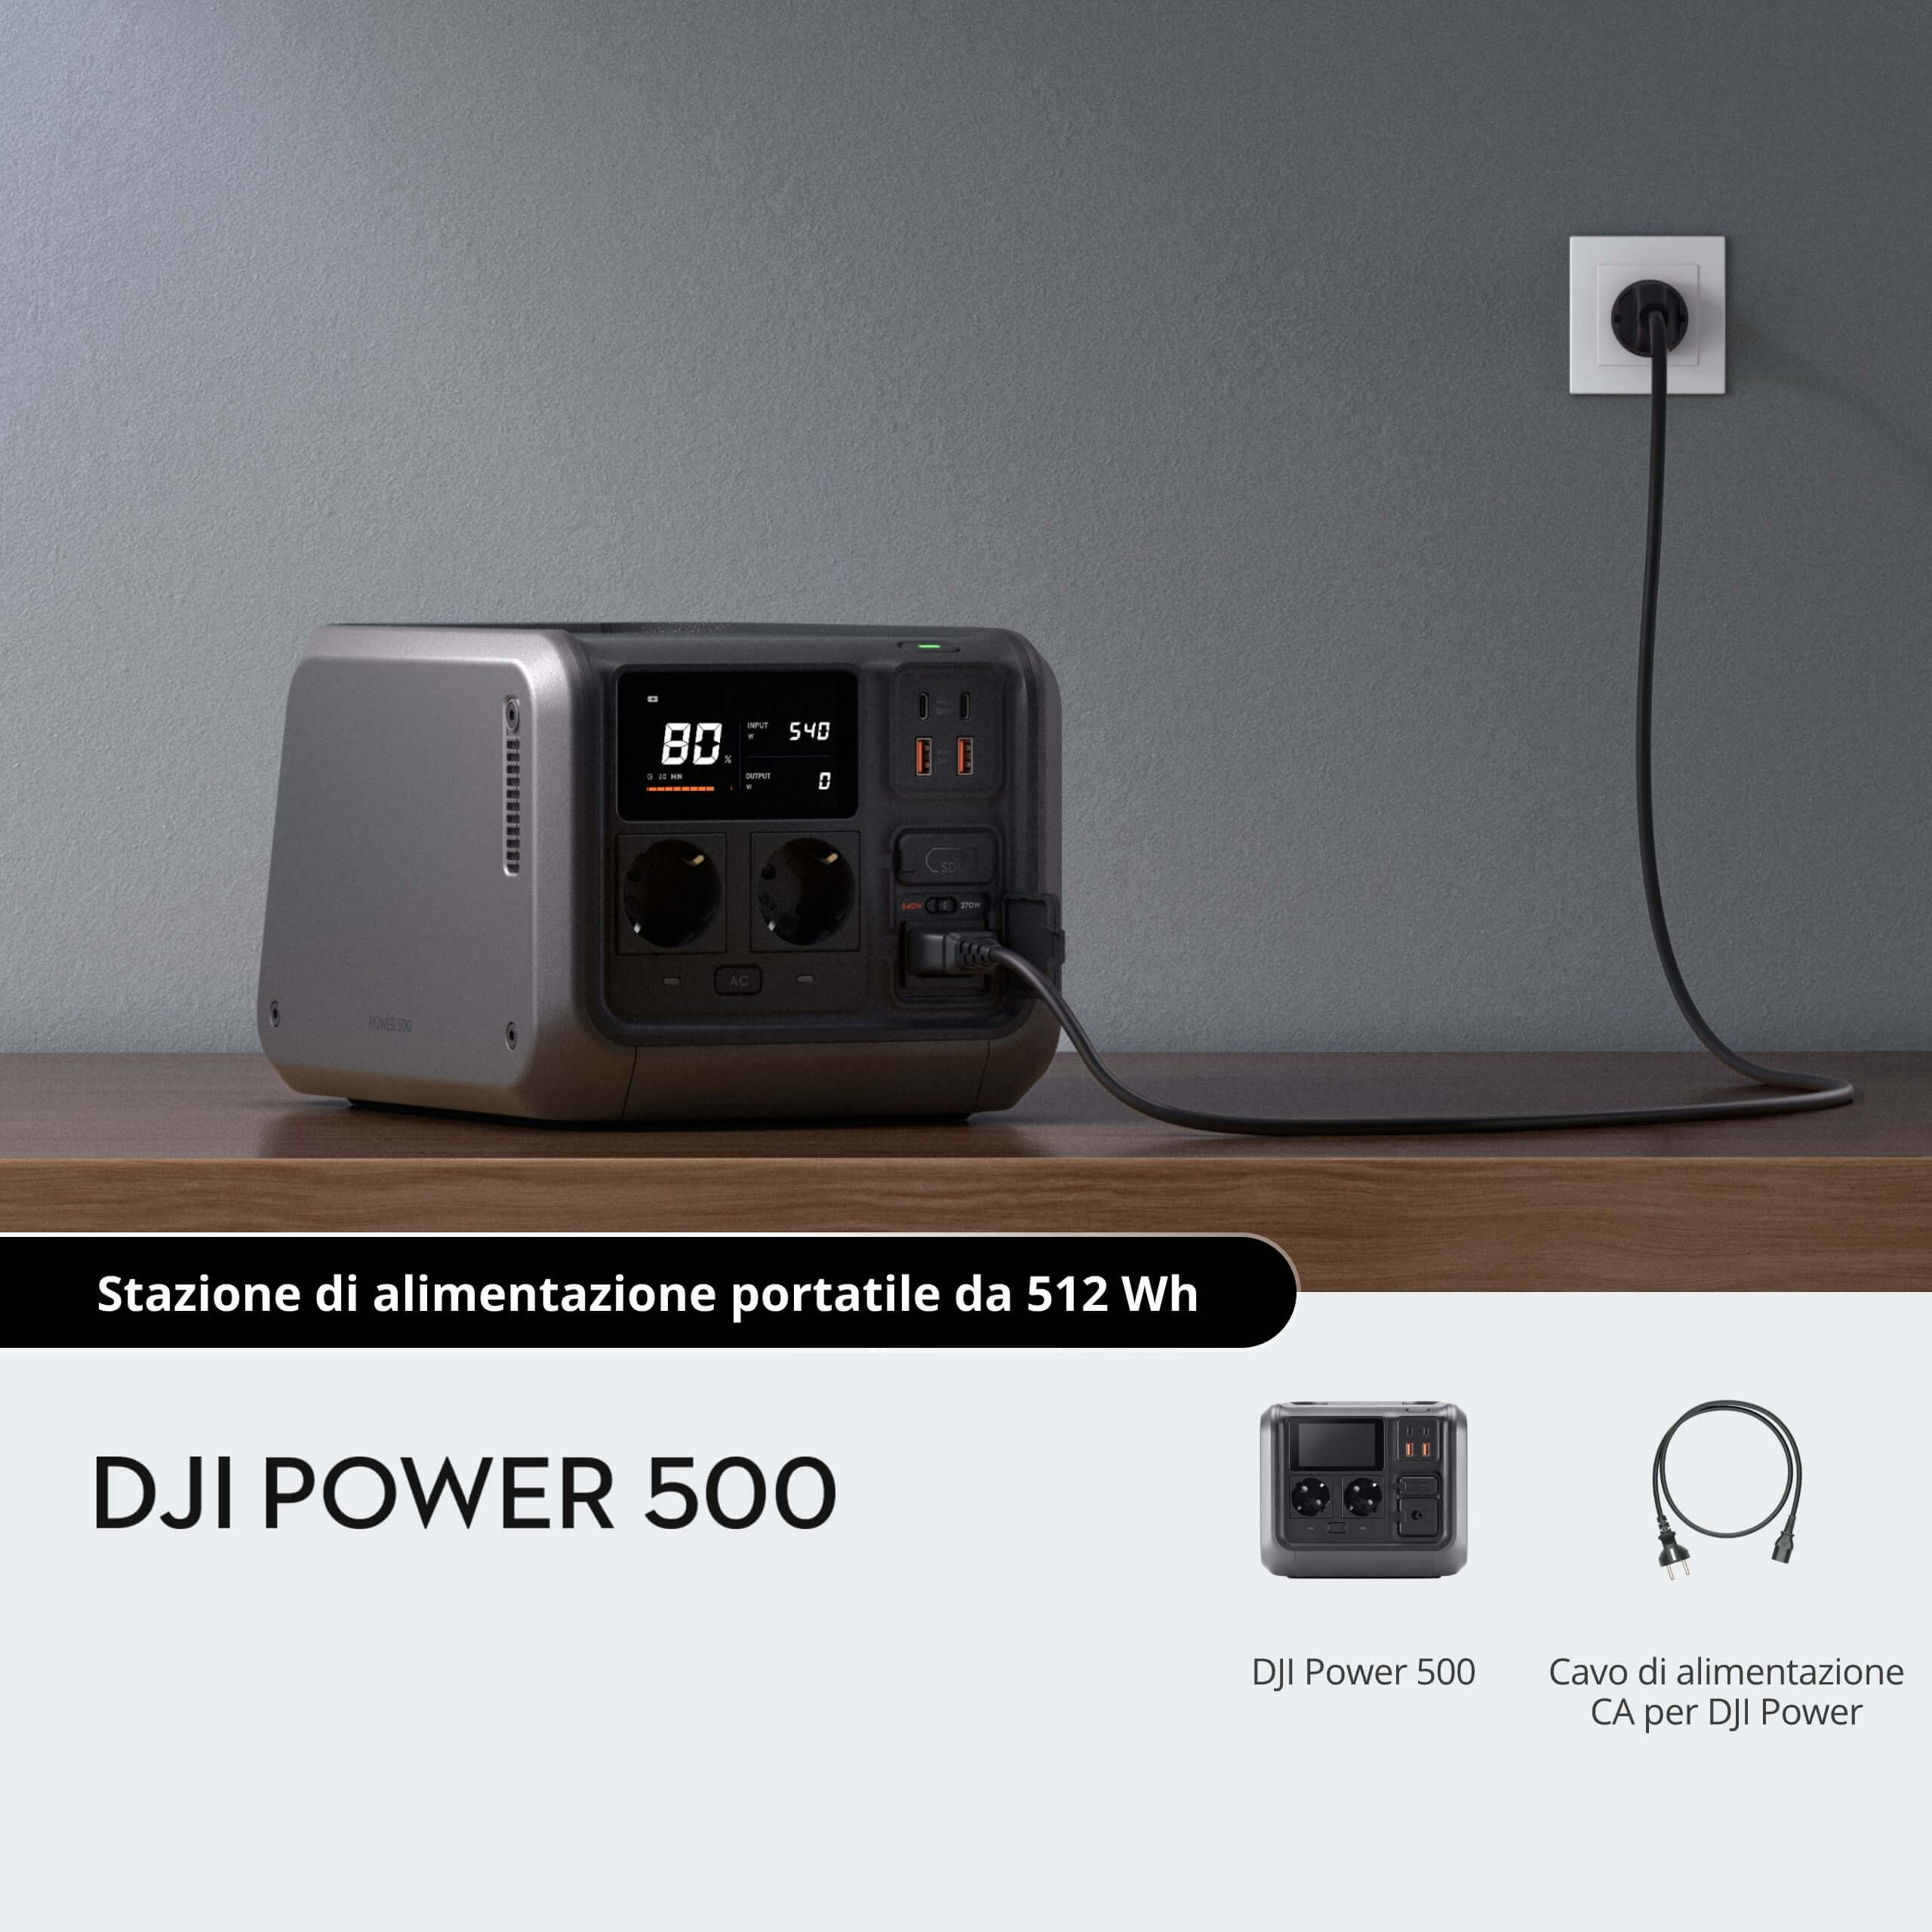 DJI Power 500